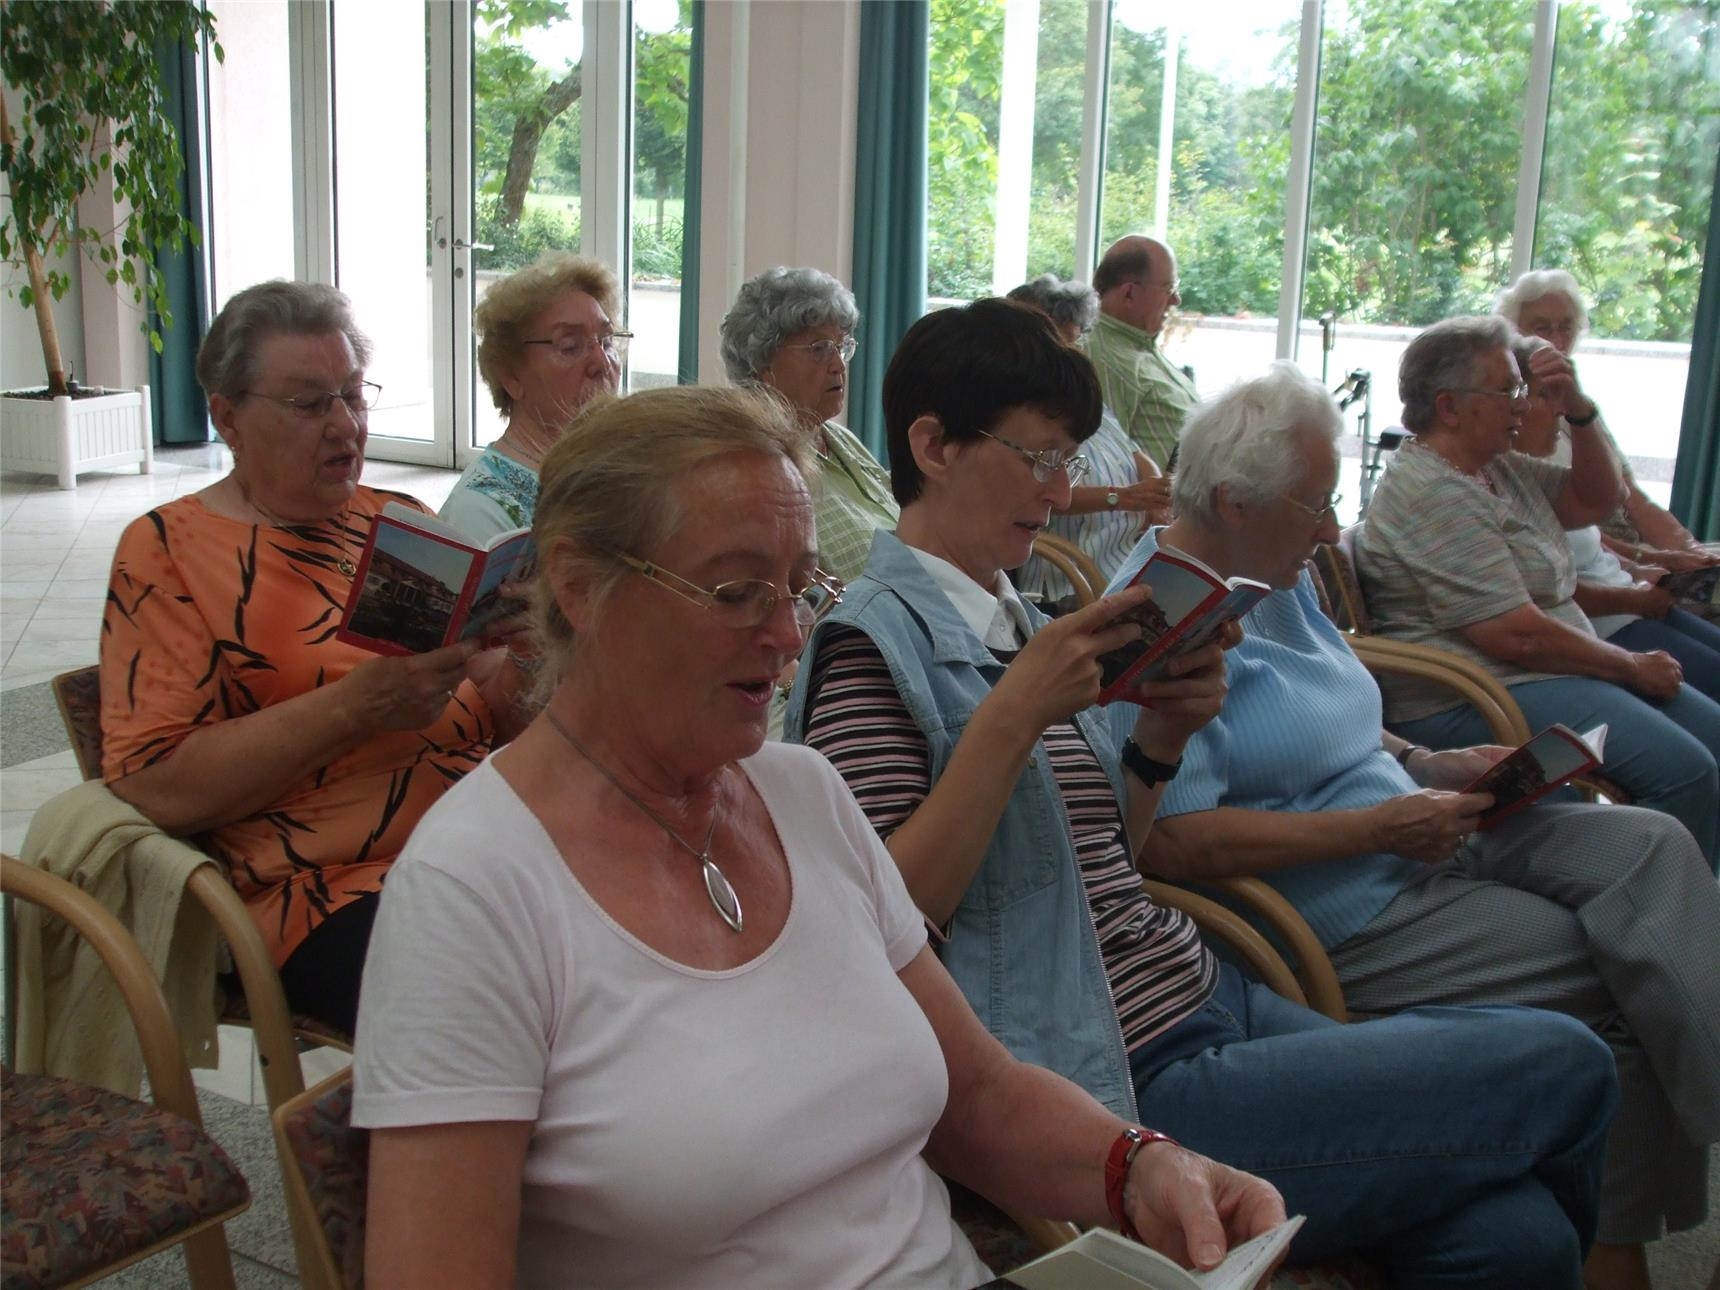 Seniorengruppe sitzen zusammen und singen (Foto: Caritasverband Koblenz)